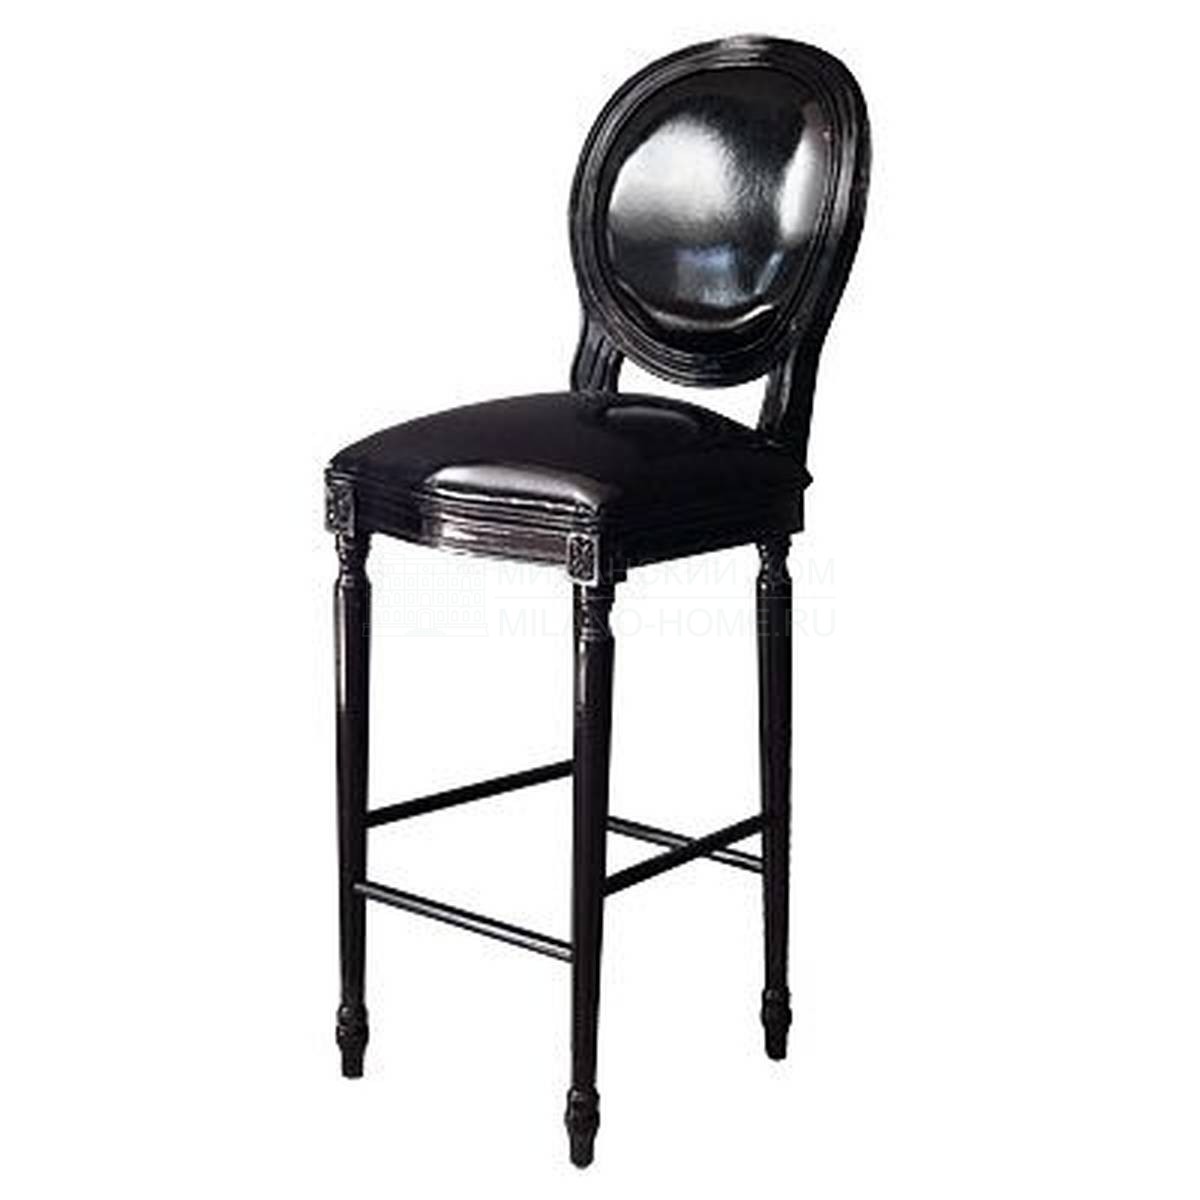 Барный стул M-3377 bar stool из Испании фабрики GUADARTE